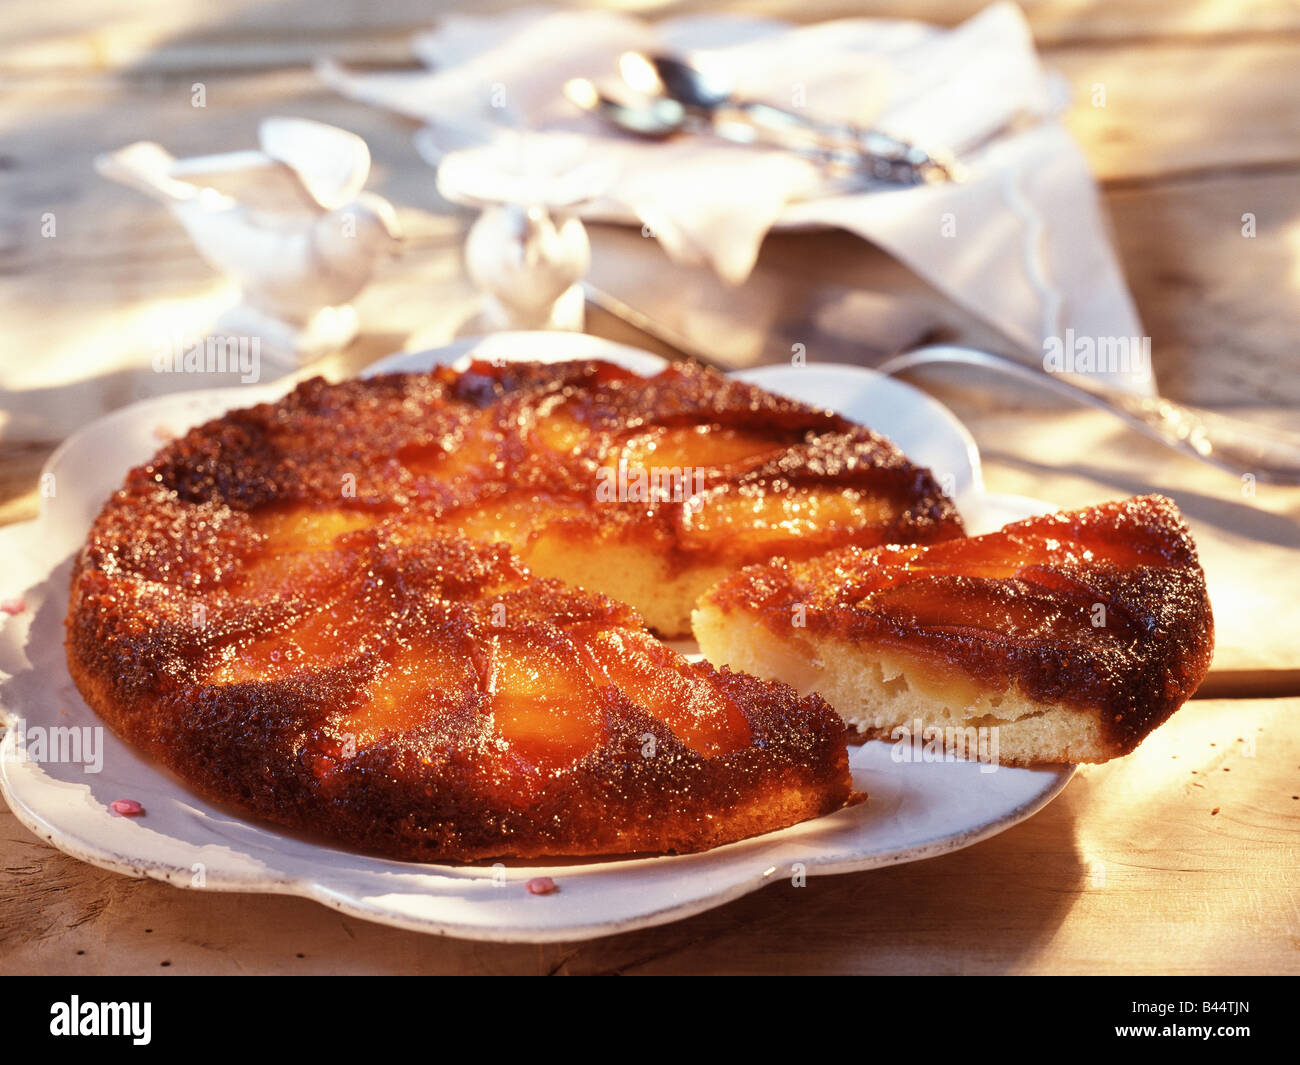 Шарлотка с яблоками простой рецепт на сковороде. Яблочный пирог на сковороде. Шарлотка с яблоками на сковороде. Пирог с яблоками на сковороде. Пирог из яблок на сковороде.